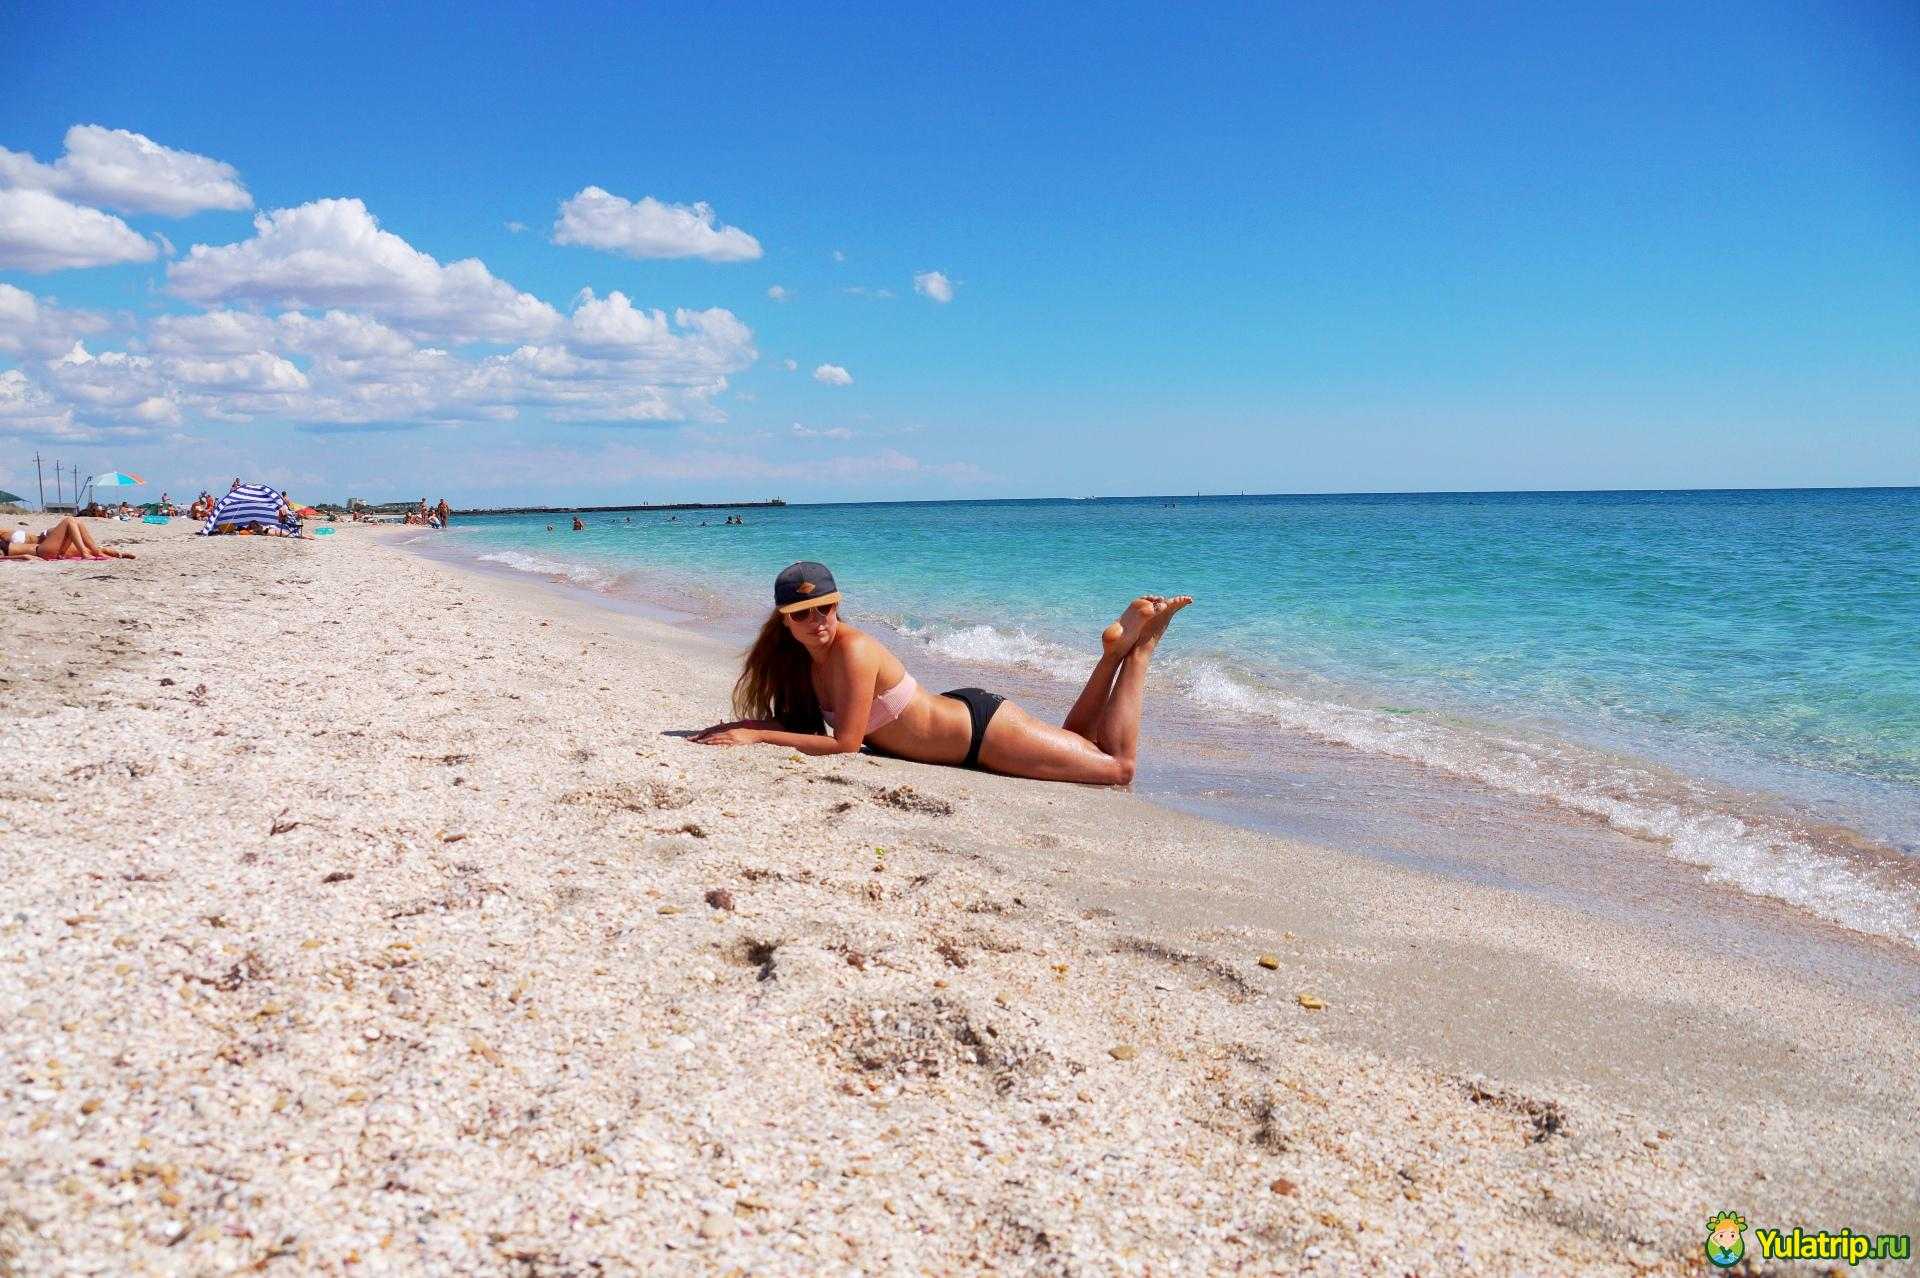 30 лучших пляжей крыма — какой выбрать для отпуска? — all my world — путеводители романа мироненко